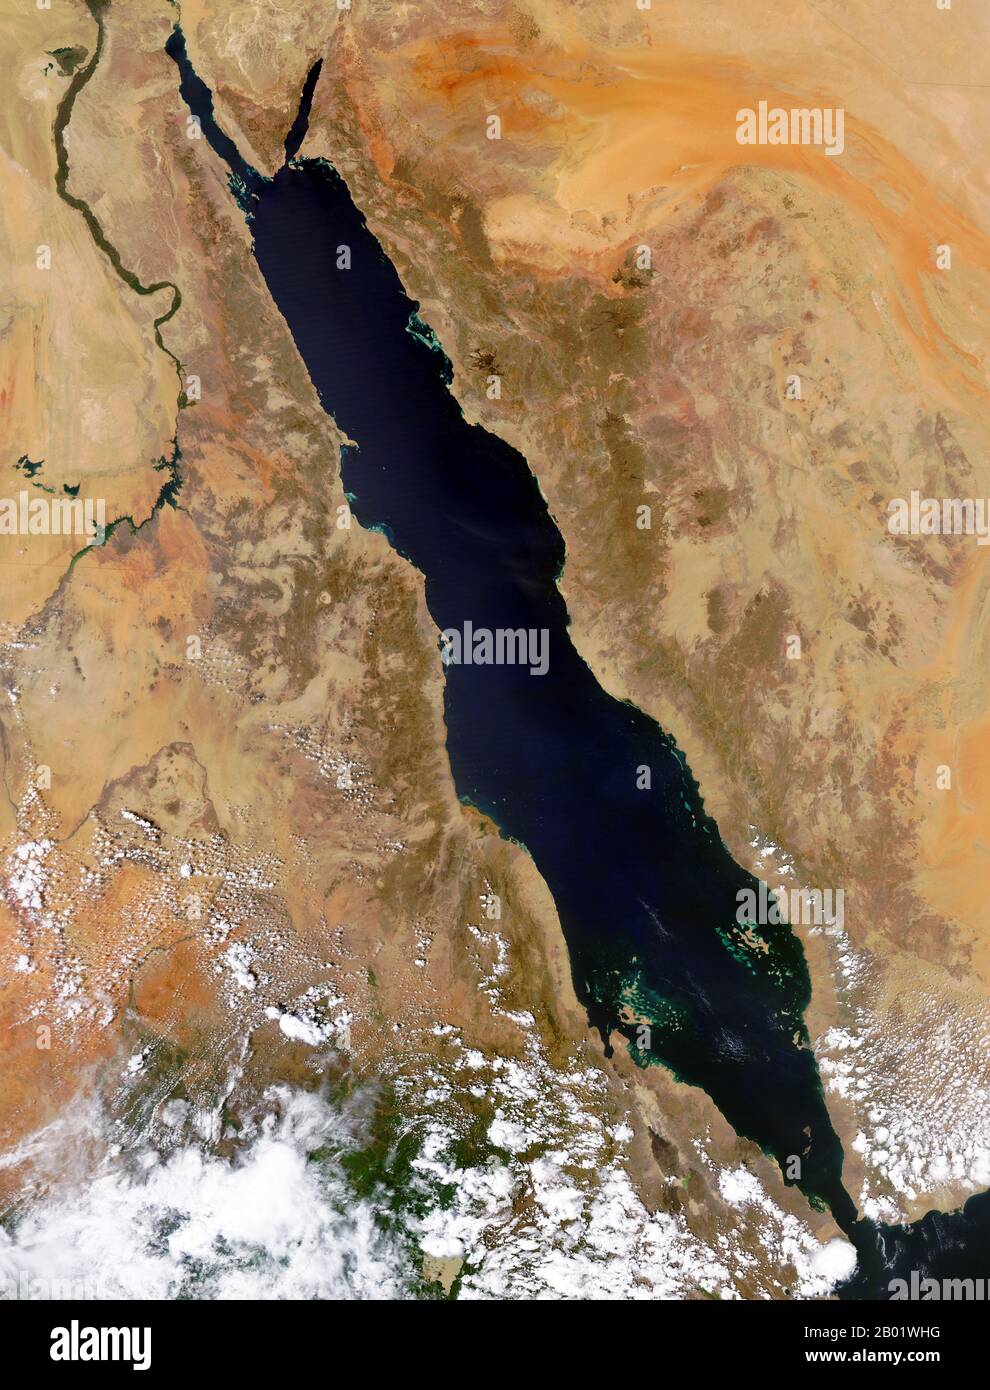 Penisola arabica/Medio Oriente: Immagine orbitale della NASA dell'area del Mar Rosso, 29 settembre 2004. Immagine satellitare della zona del Mar Rosso comprendente (in senso orario dall'alto) parte o tutti i territori di Israele, Giordania, Arabia Saudita, Yemen, Gibuti, Eritrea, Etiopia, Sudan del Sud, Sudan ed Egitto. Foto Stock